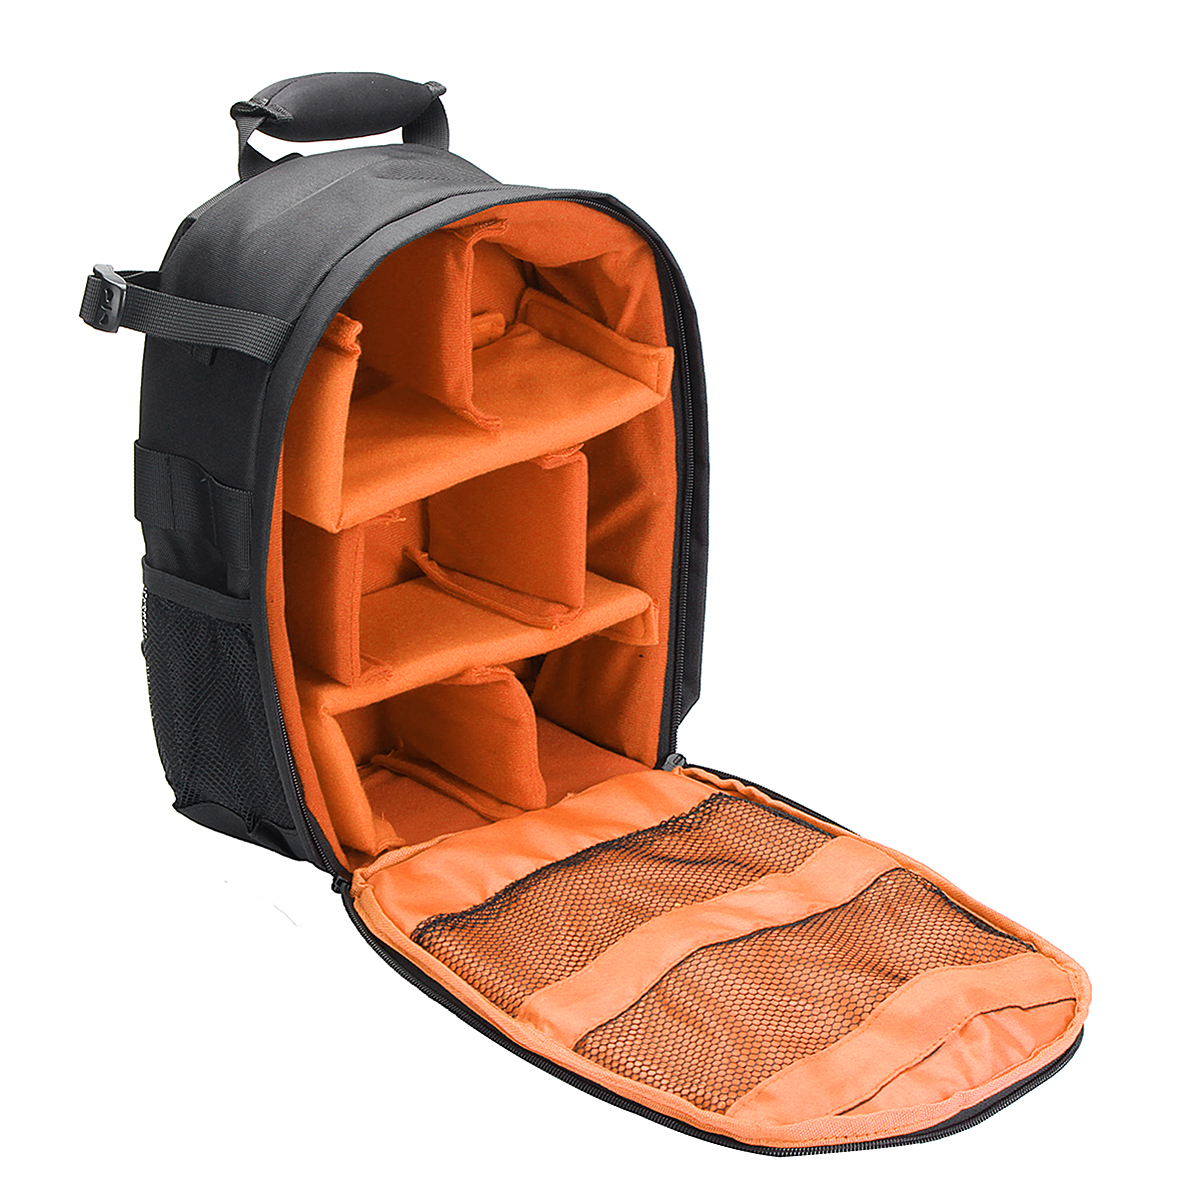 Waterproof-Shoulder-Bag-Backpack-Rucksack-With-Reflective-Stripe-For-DSLR-Camera-1378394-2